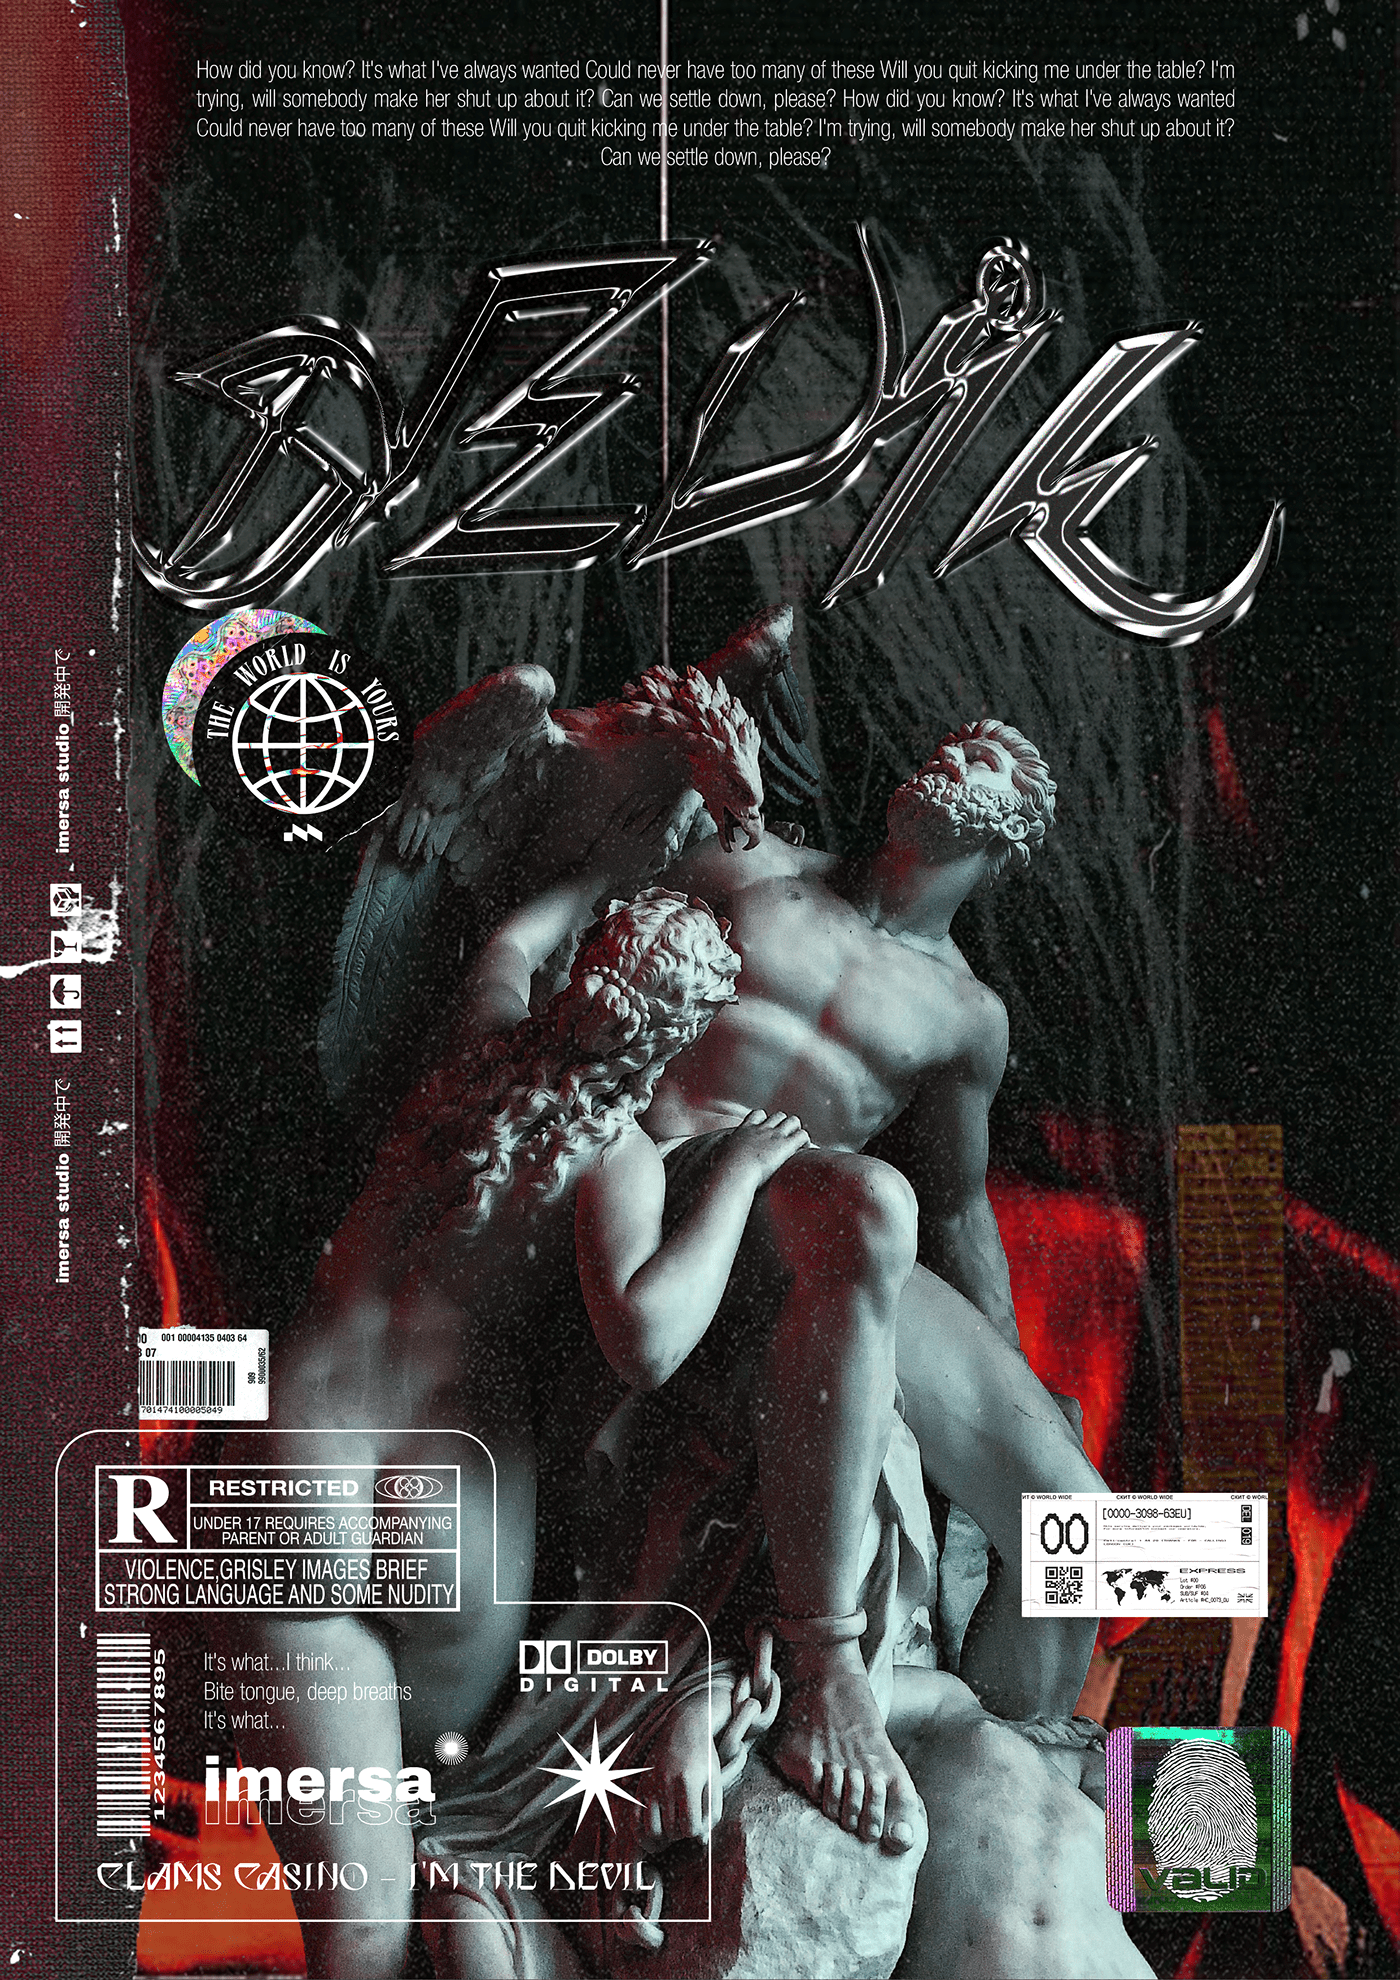 acid acidgraphix Billie Eilish design graphic lil nas x music poster